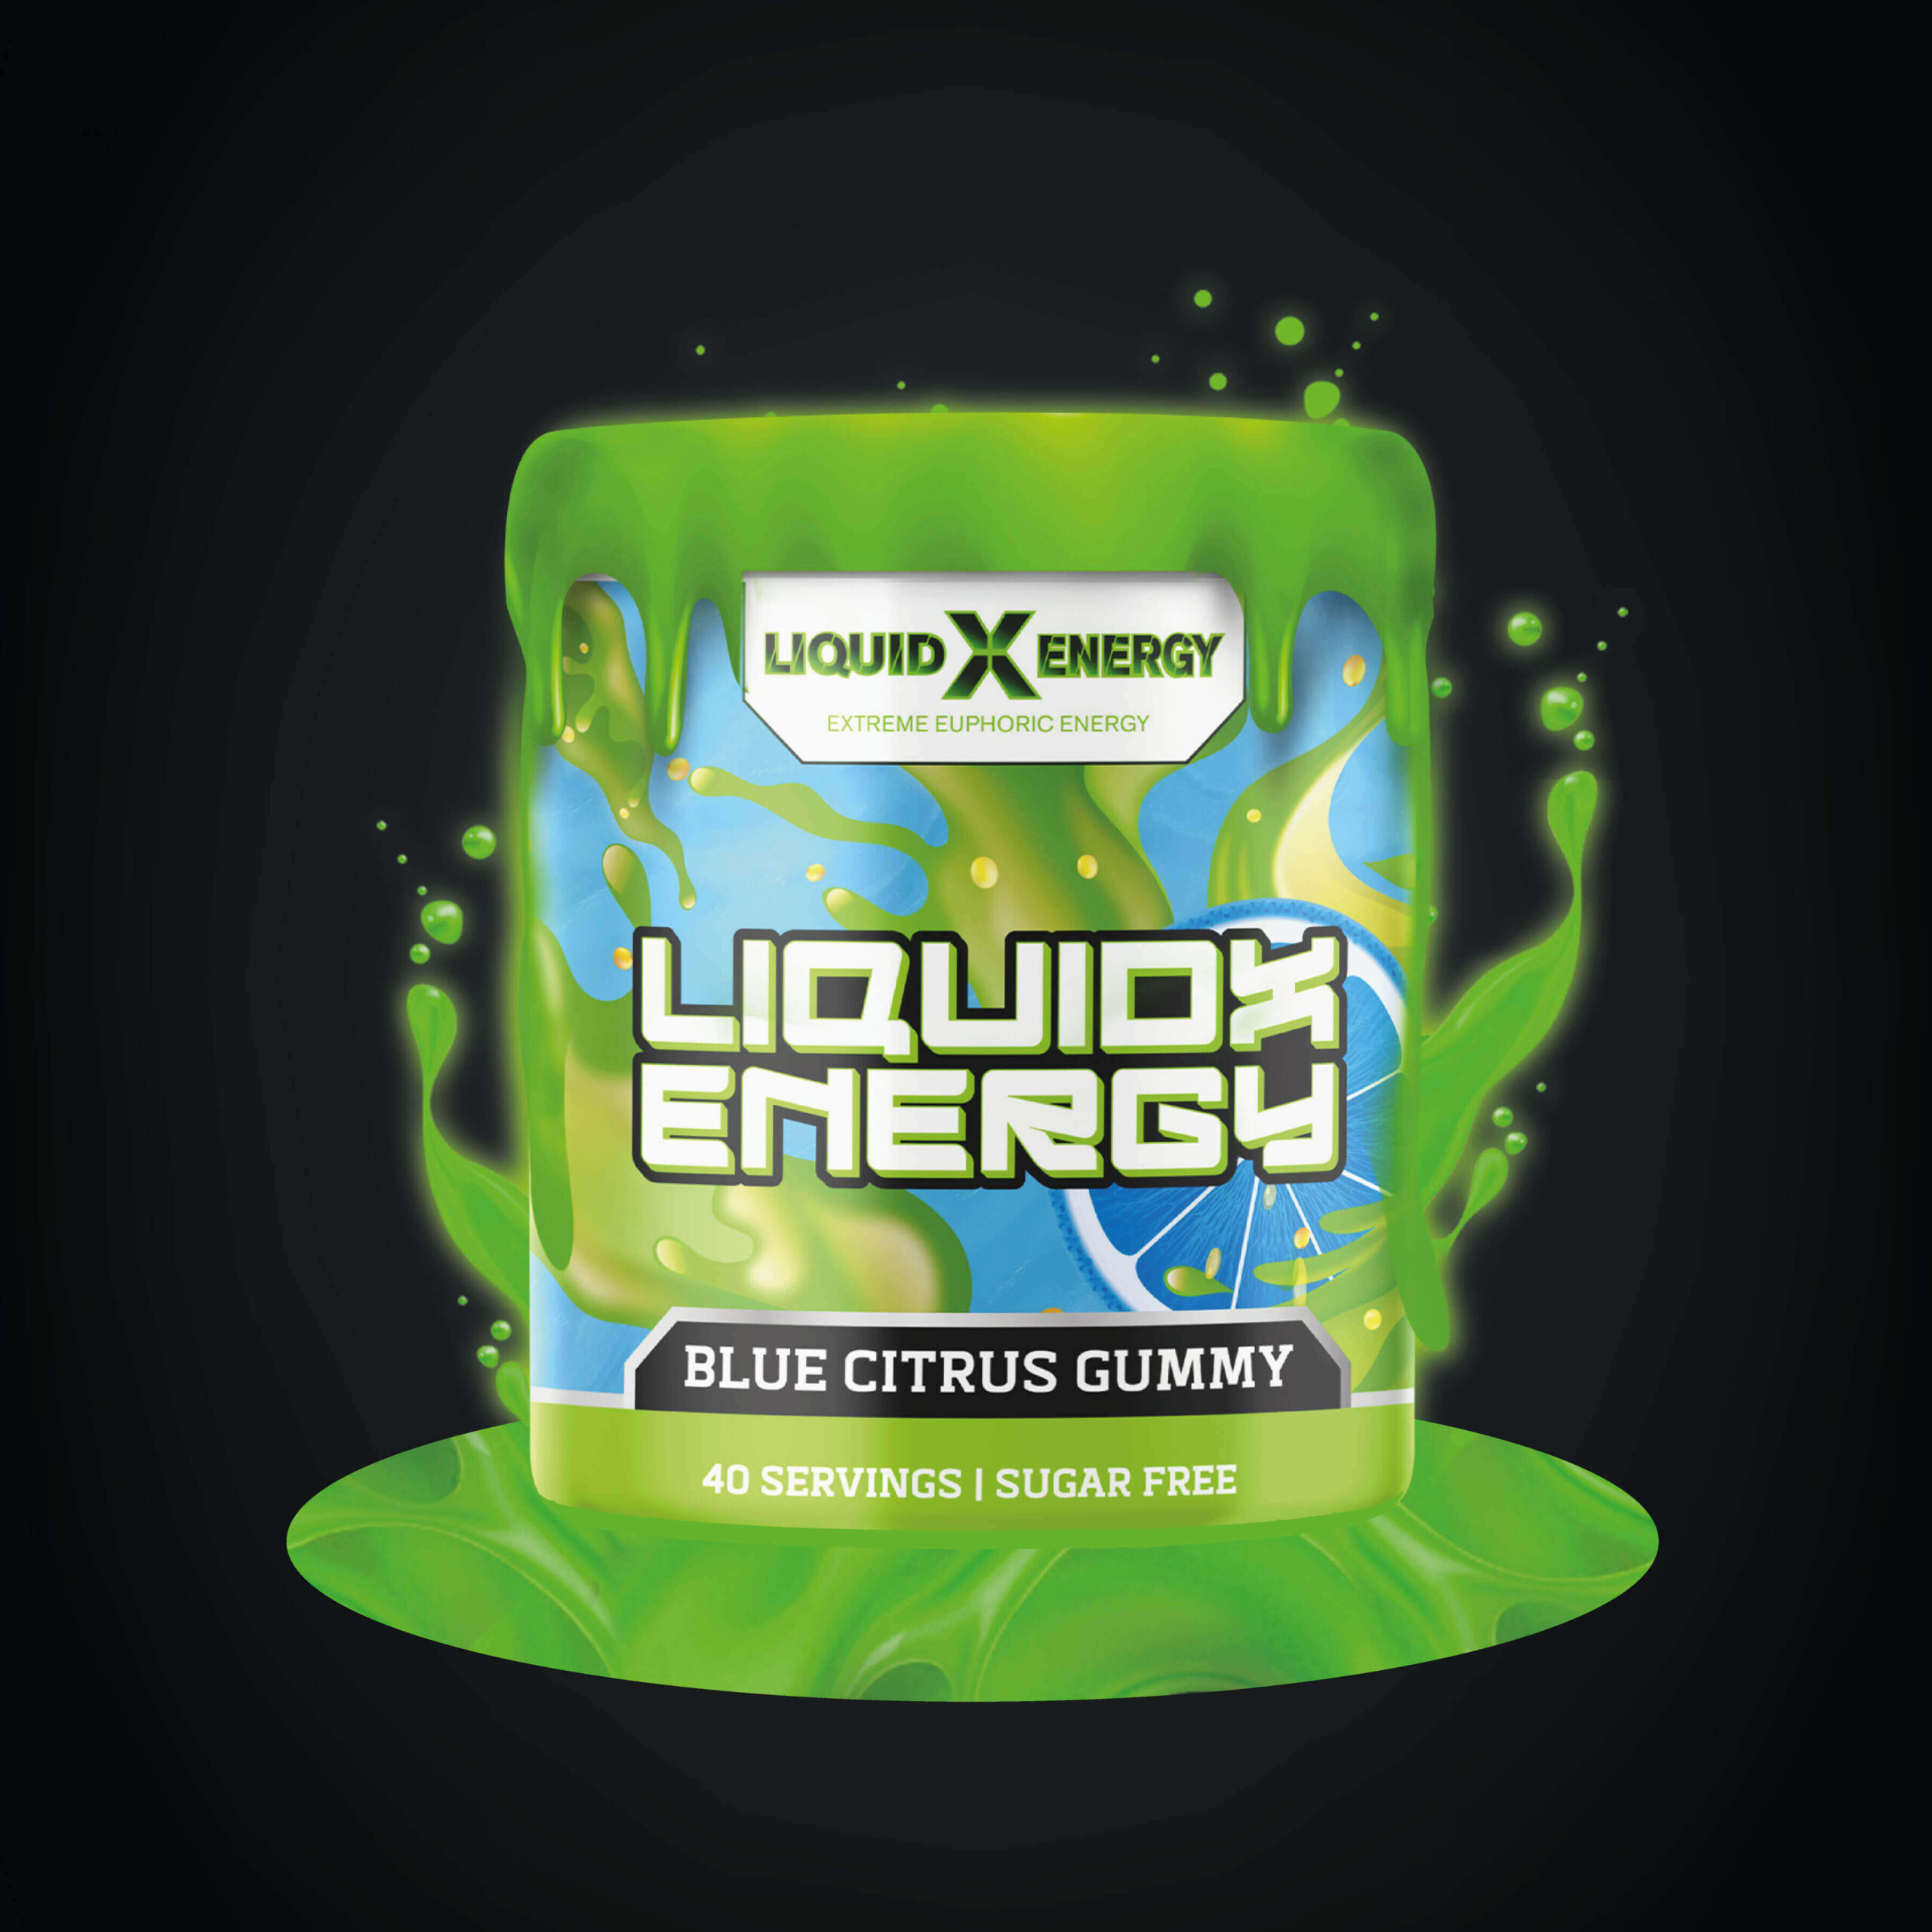 Liquid X Energy